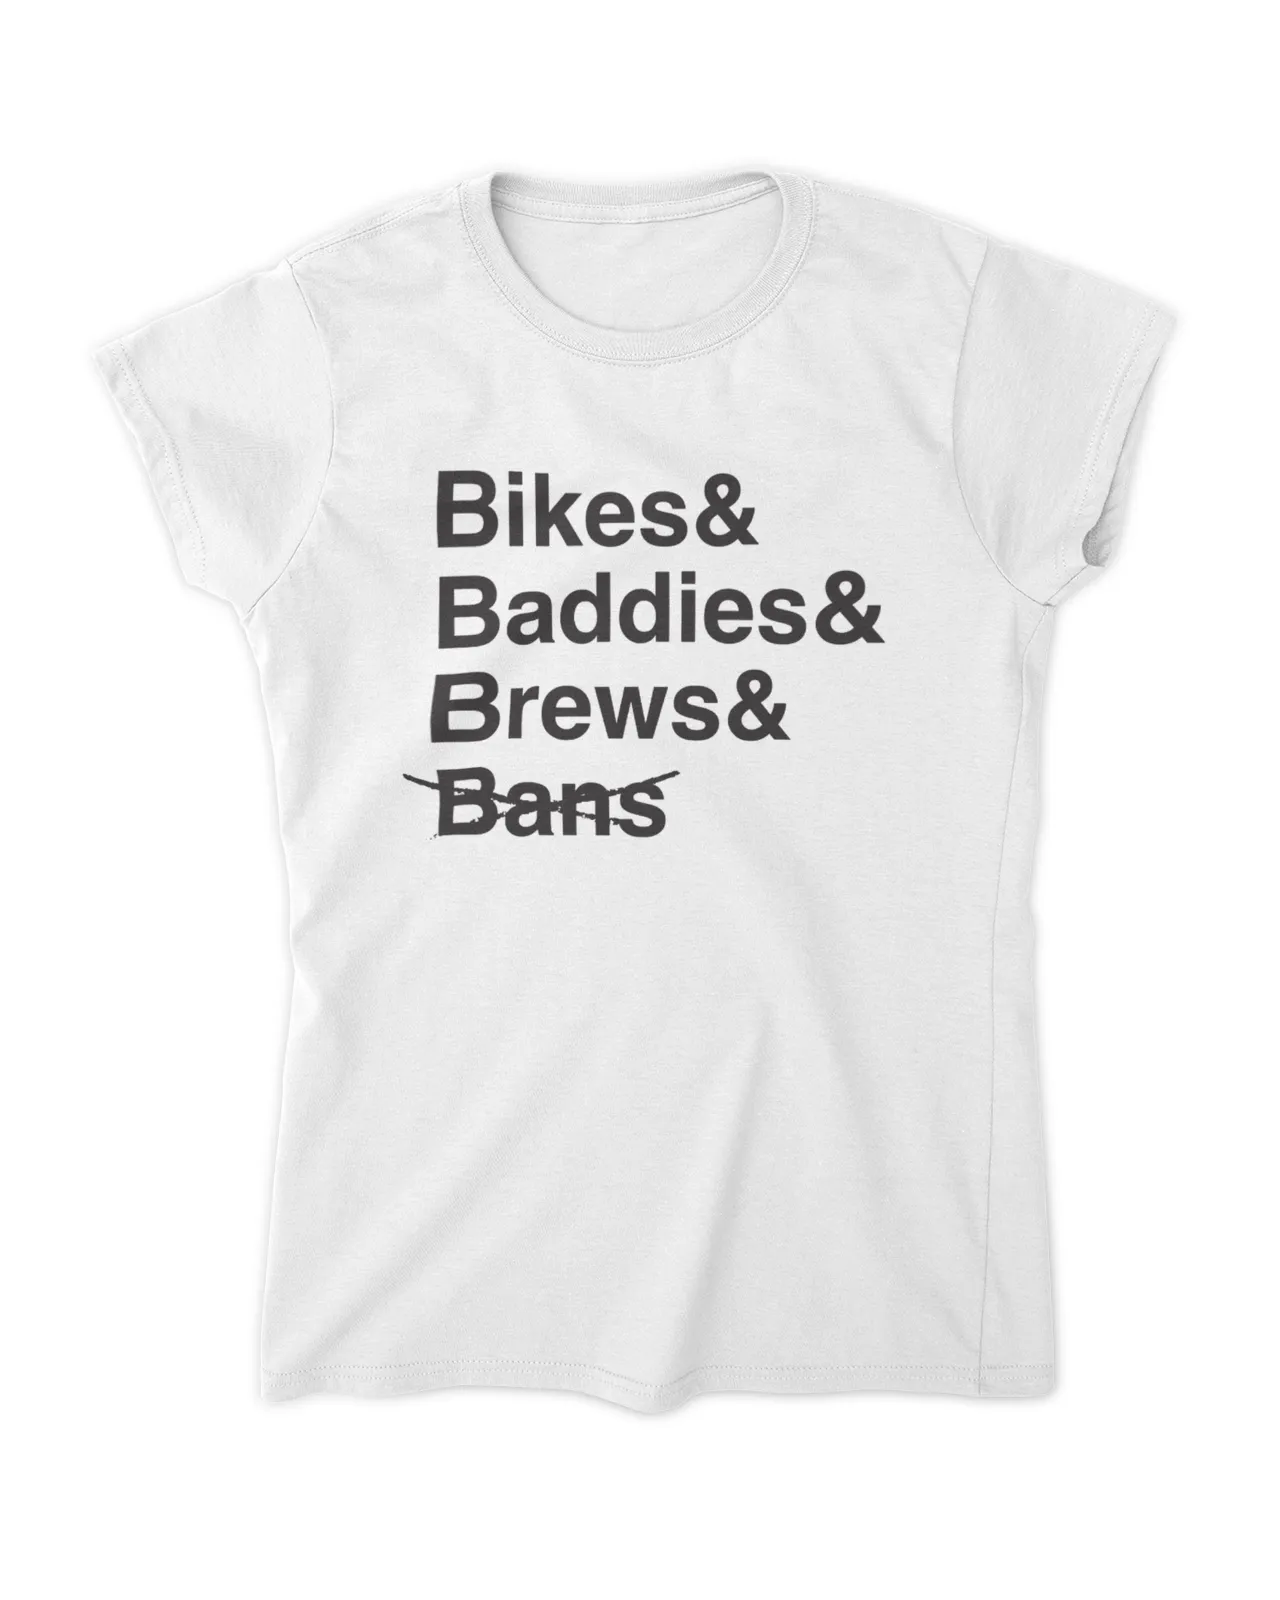 Bikes, Baddies, Brews And (No Bans) Shirt